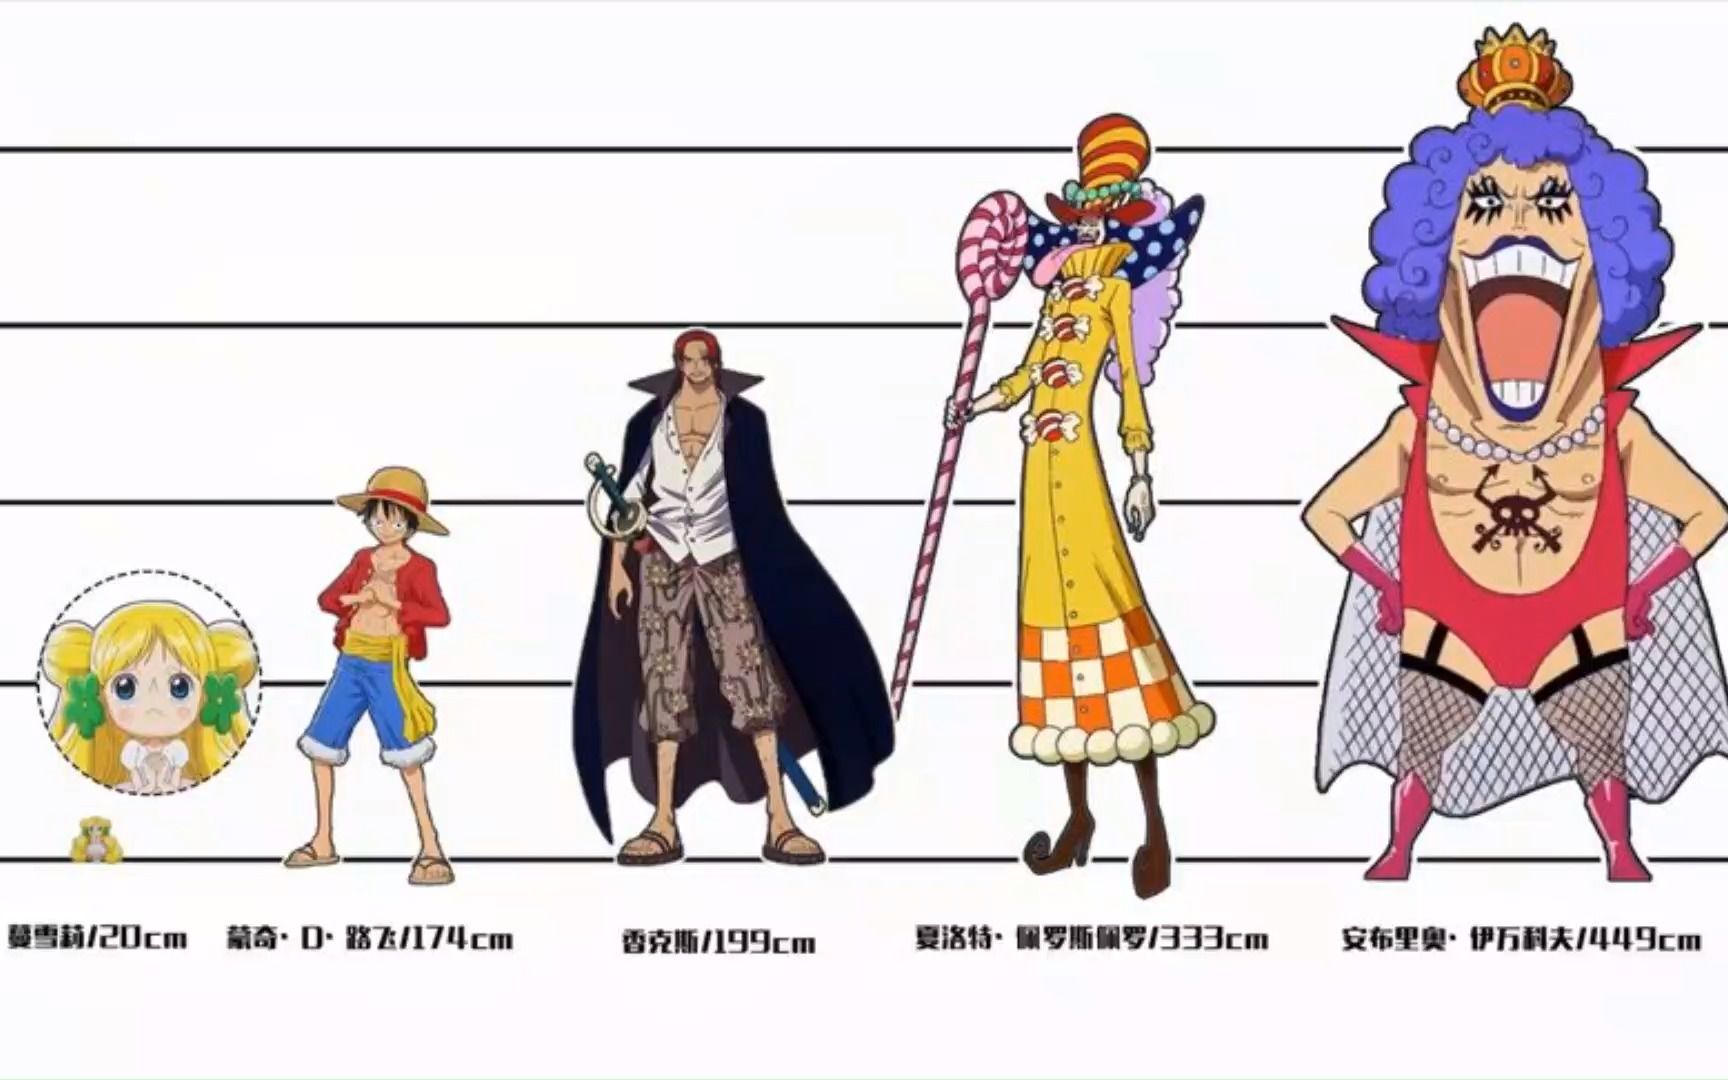 动漫人物身高盘点:把《海贼王》里的人物真实身高做个对比,你知道谁最